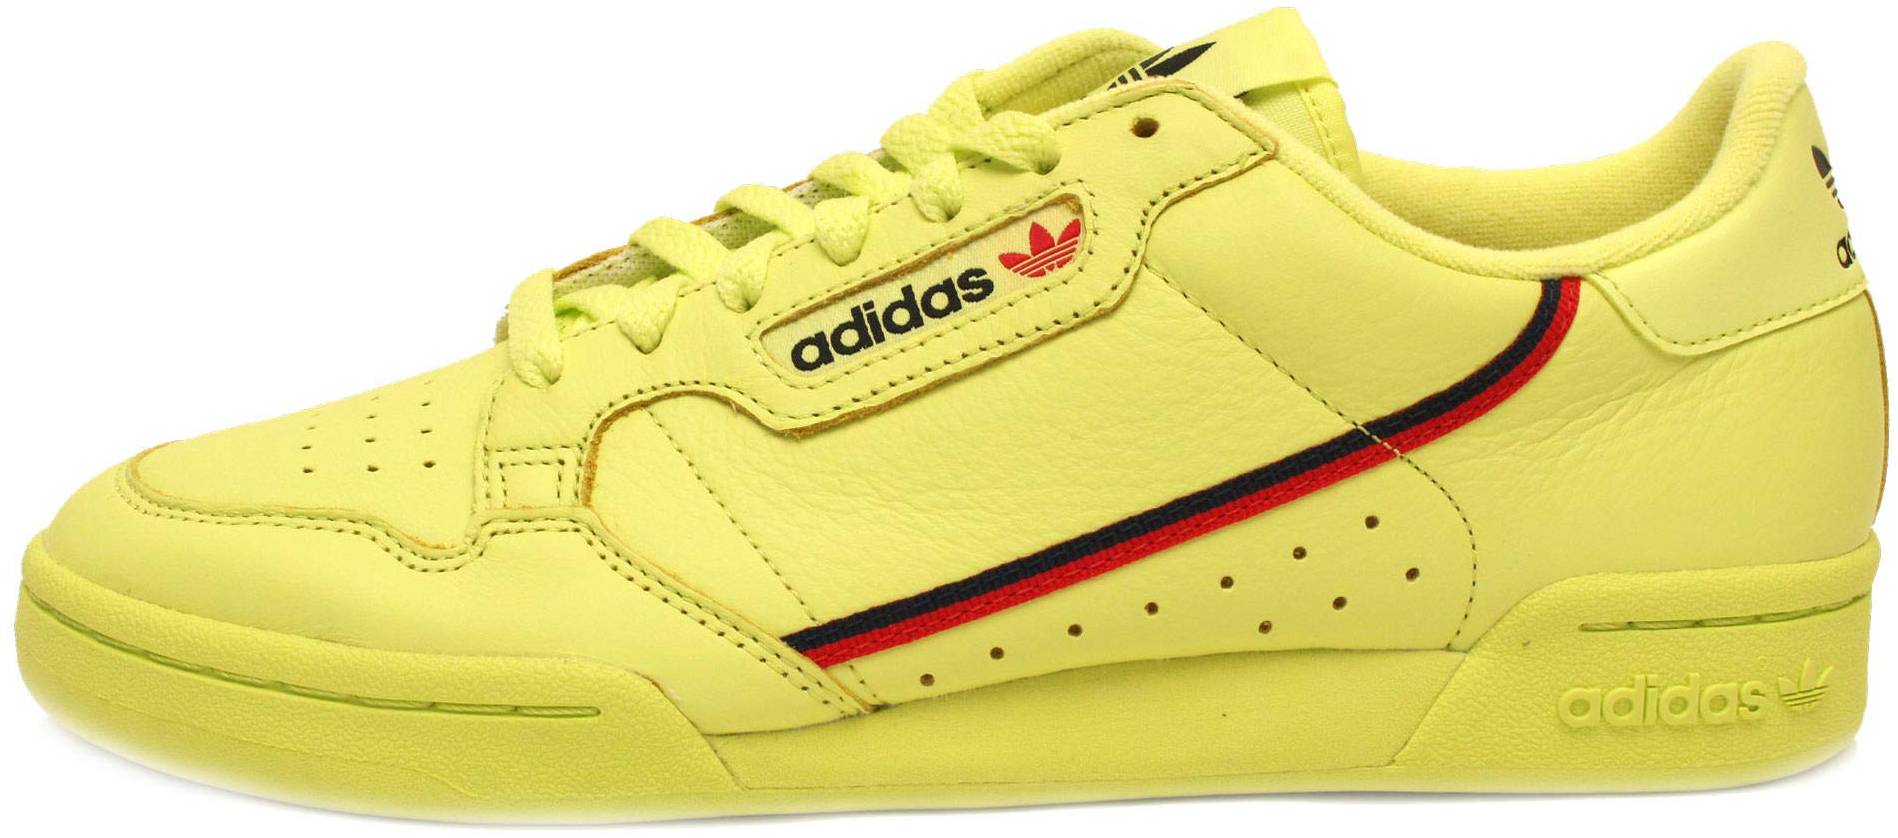 adidas yellow shoes mens